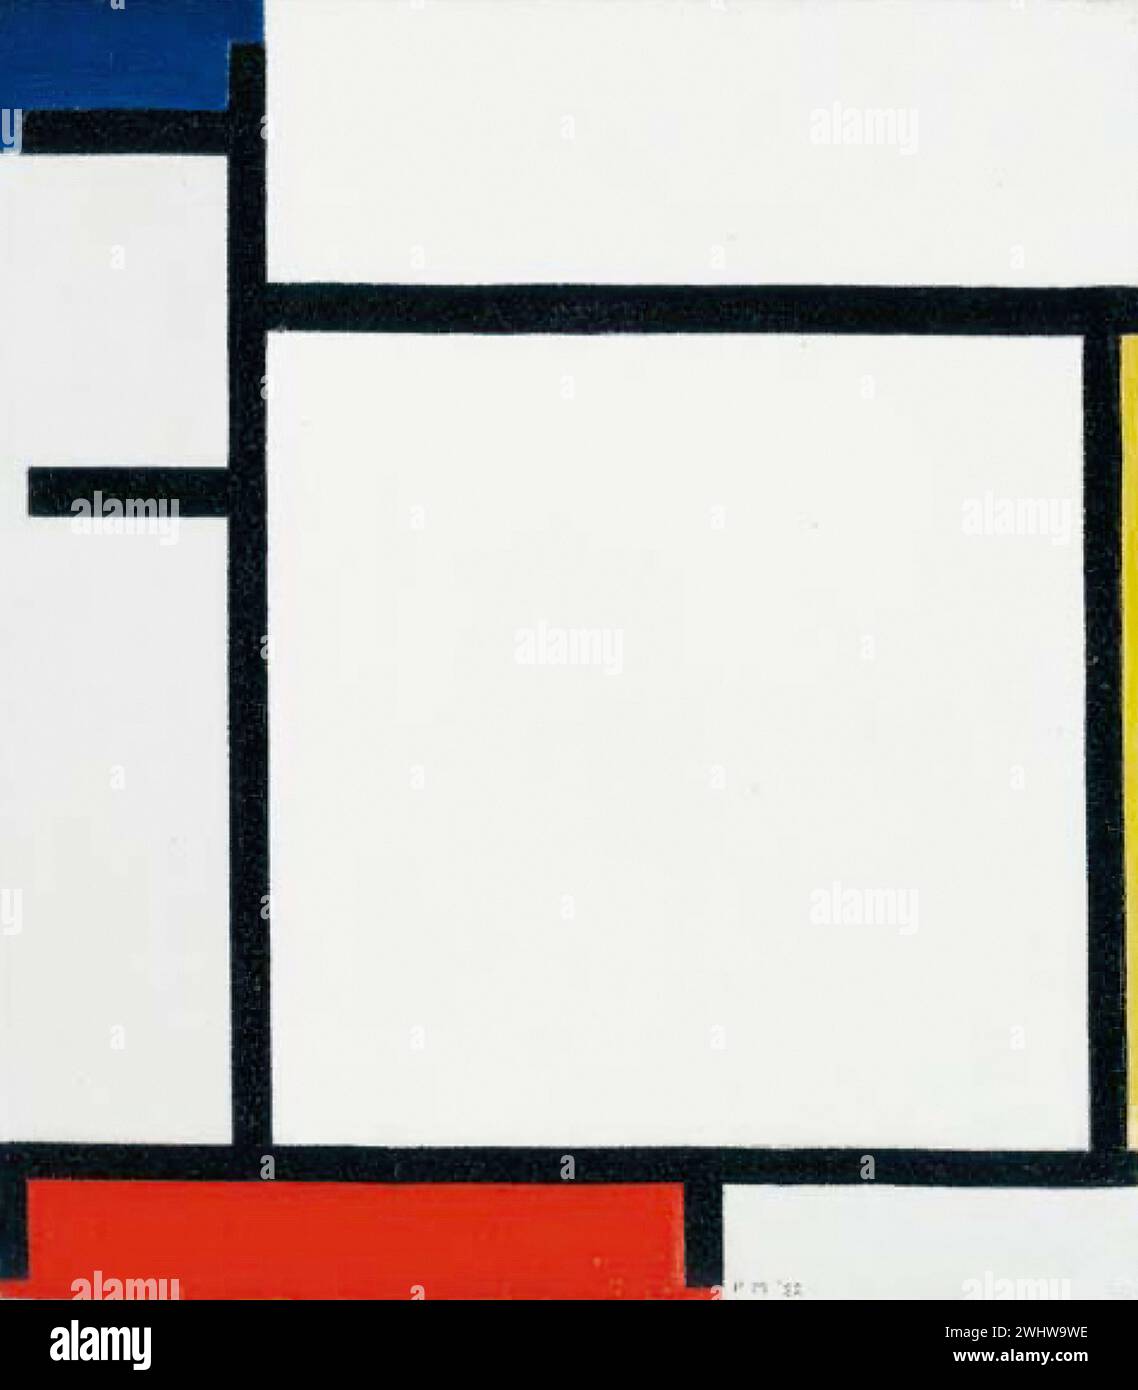 Piet Mondrian - Composition avec bleu, jaune, rouge et gris Stock Photo